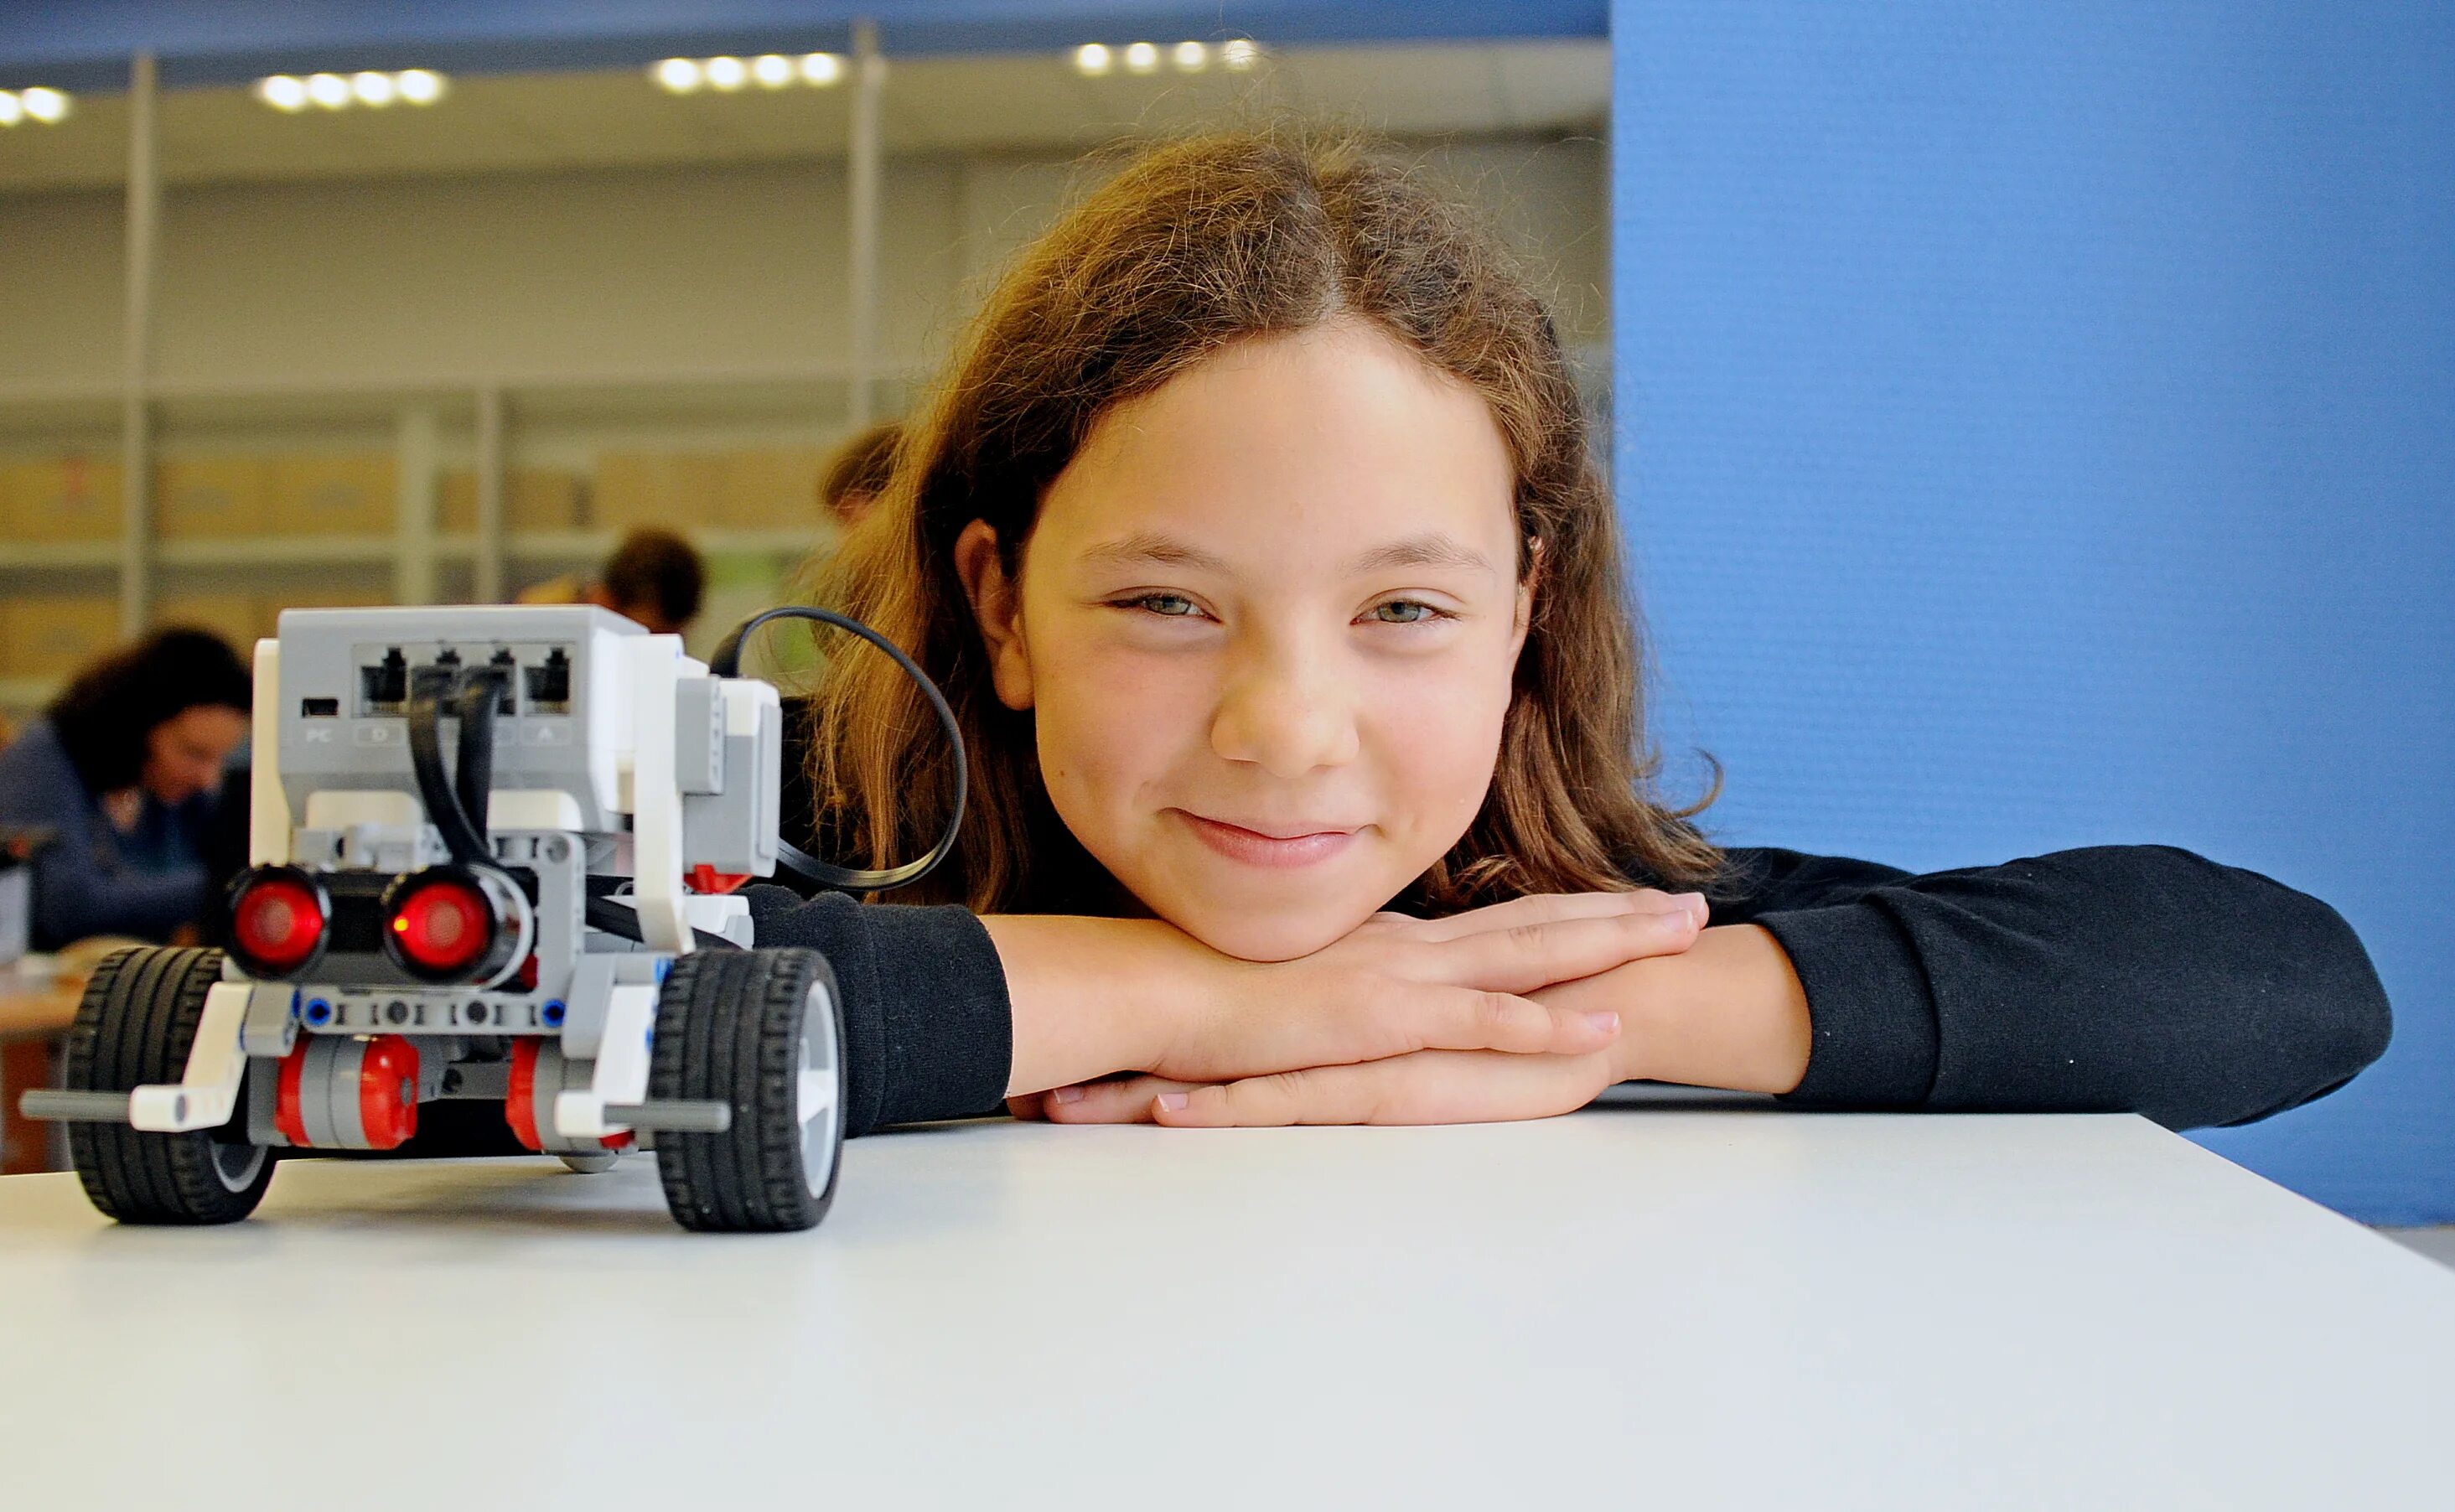 Робототехника новое хобби школьников. Робототехника для детей. Роботостроение для детей. Робототехника в школе. Соревнования по робототехнике.